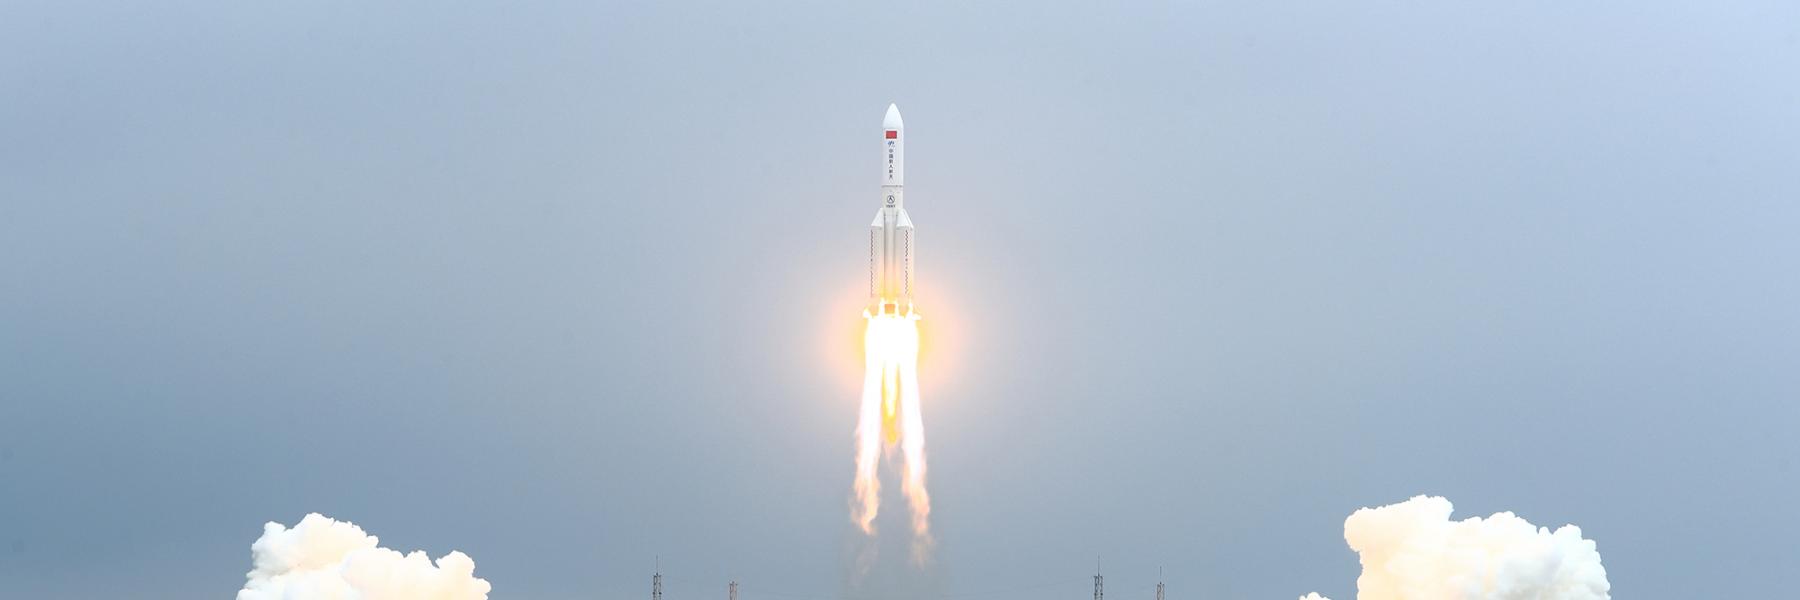 وضع ينذر بالخطر.. الصاروخ الصيني "التائه" يعود إلى الأرض